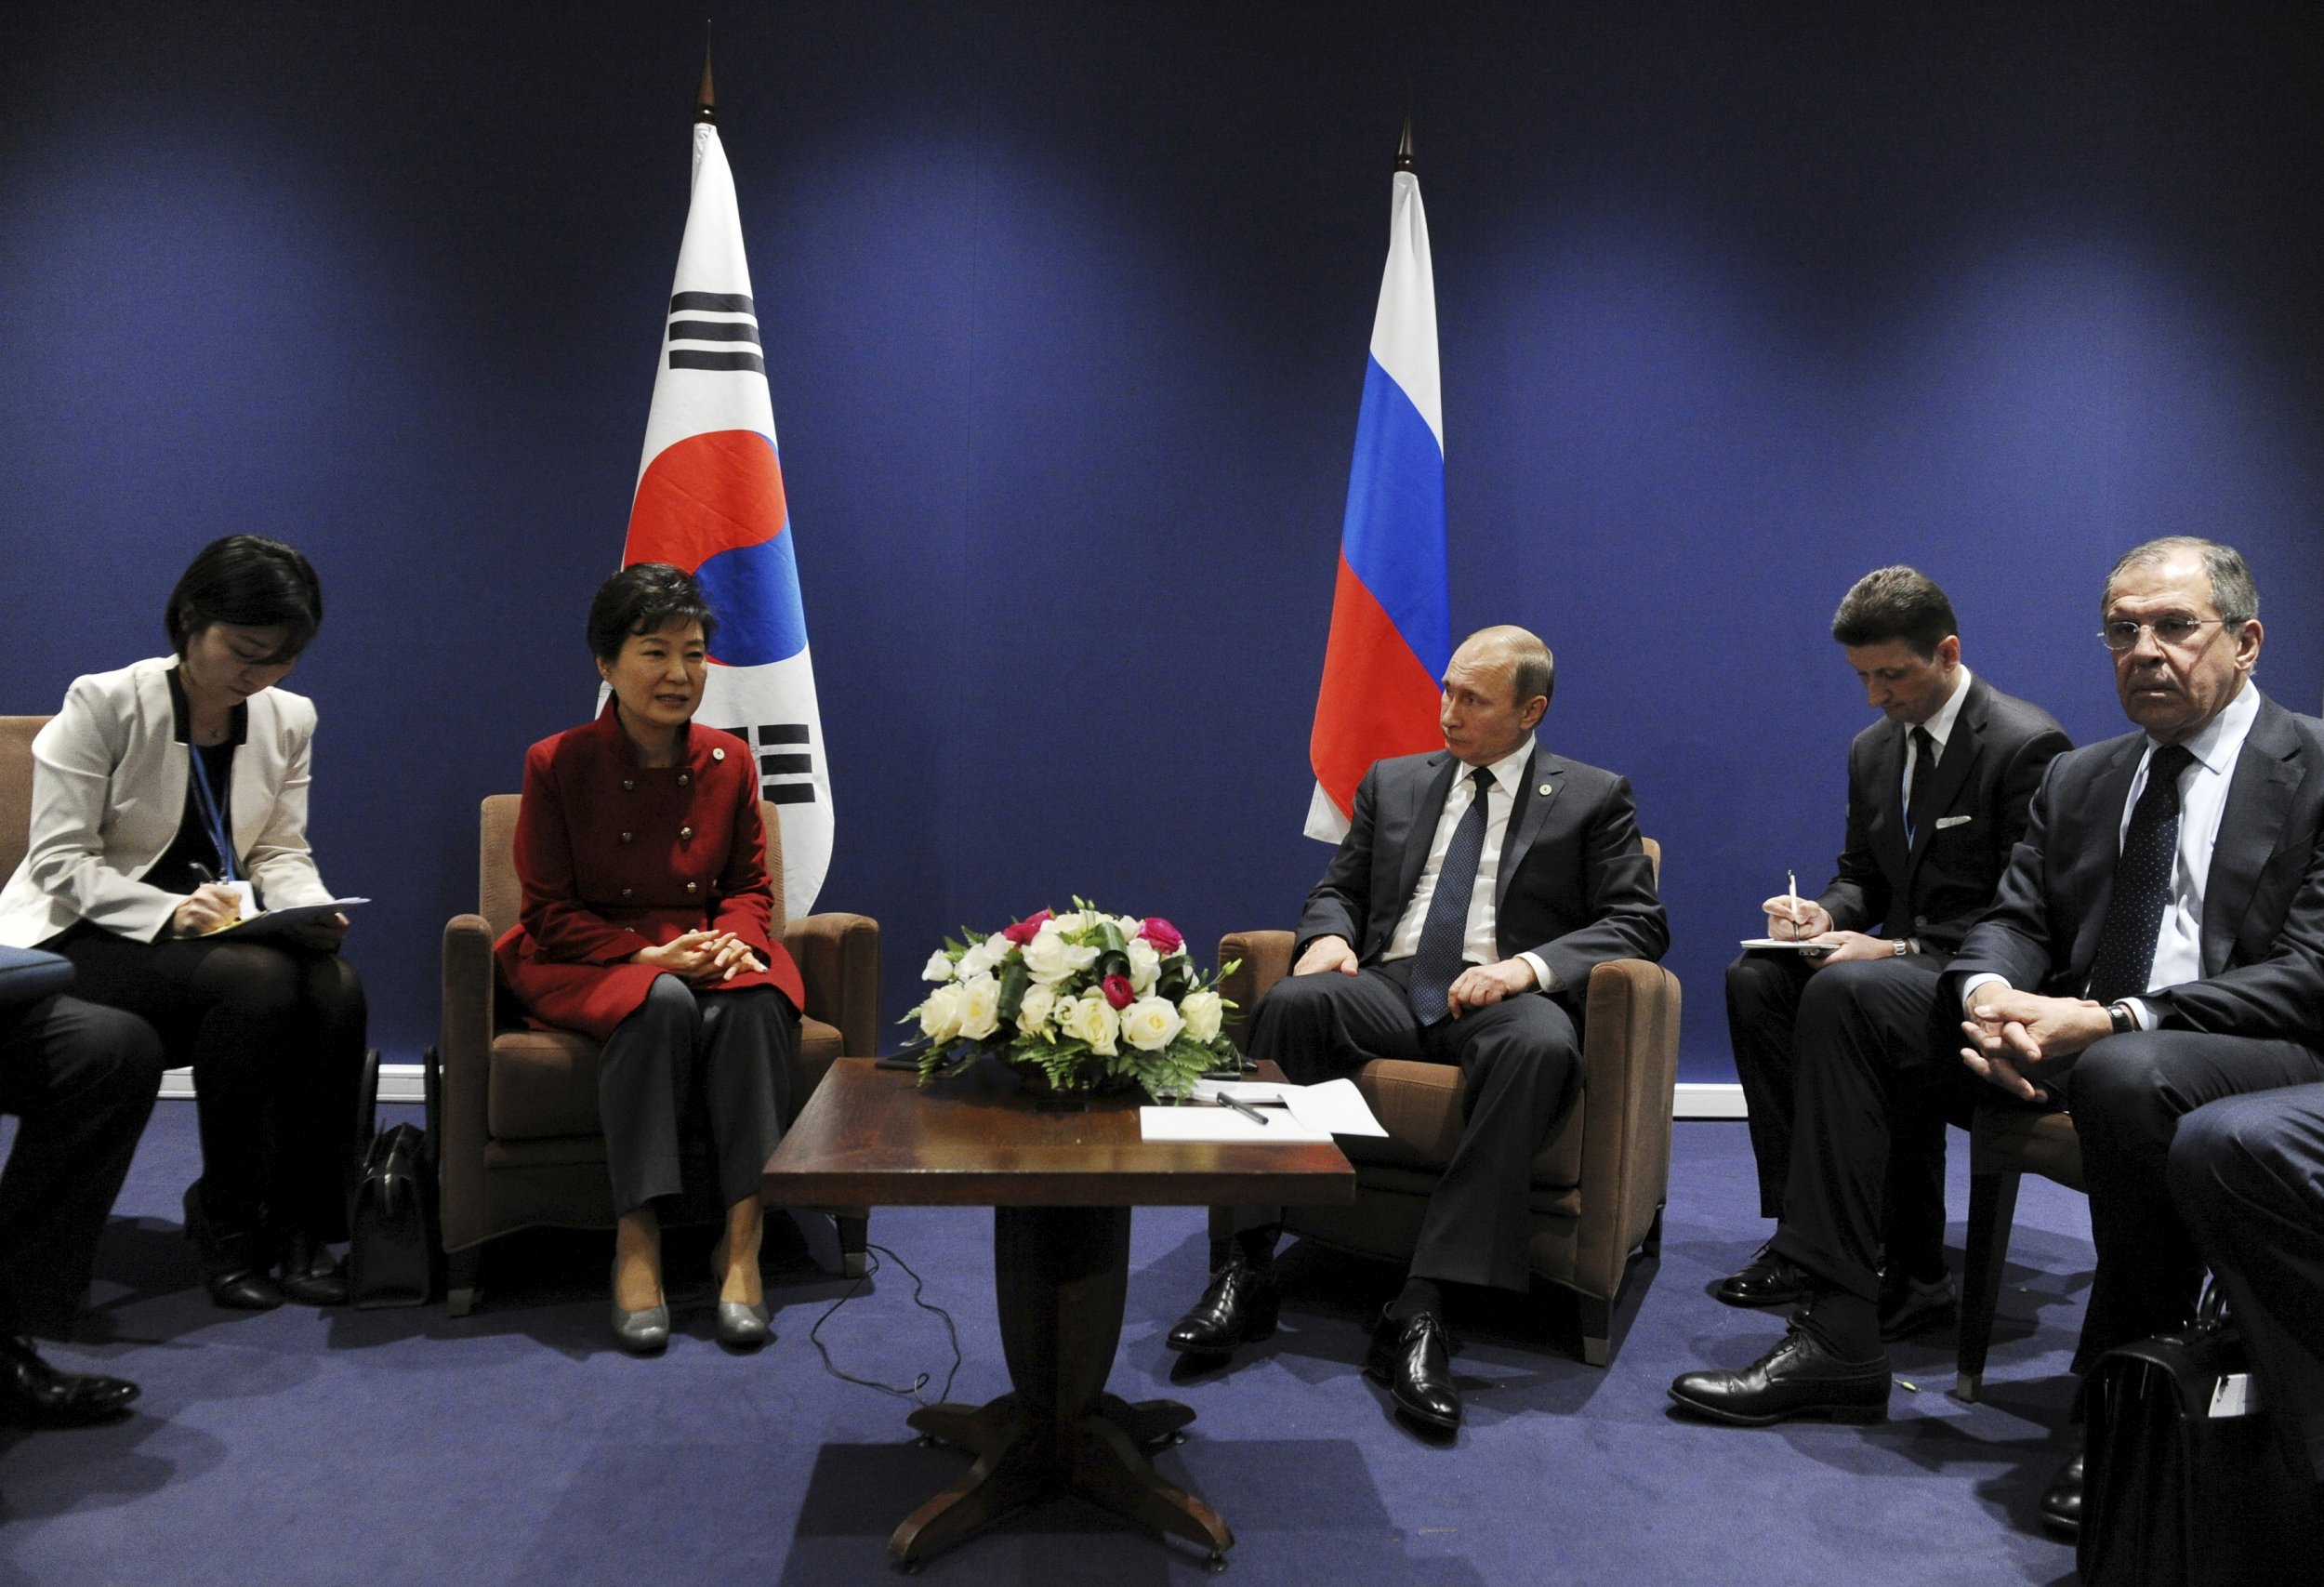 Vladimir Putin and Park Geun-hye